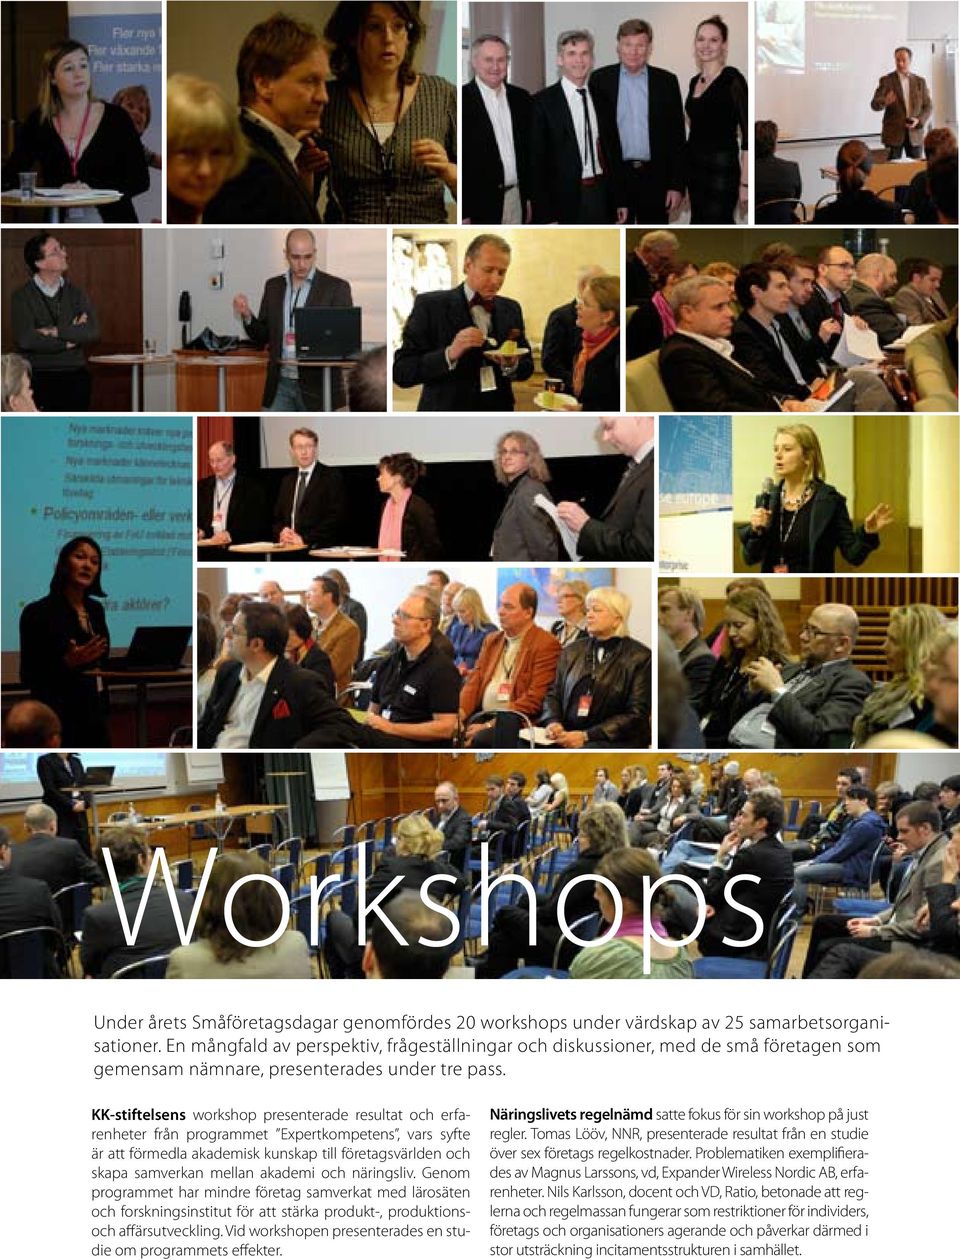 KK-stiftelsens workshop presenterade resultat och erfarenheter från programmet Expertkompetens, vars syfte är att förmedla akademisk kunskap till företagsvärlden och skapa samverkan mellan akademi